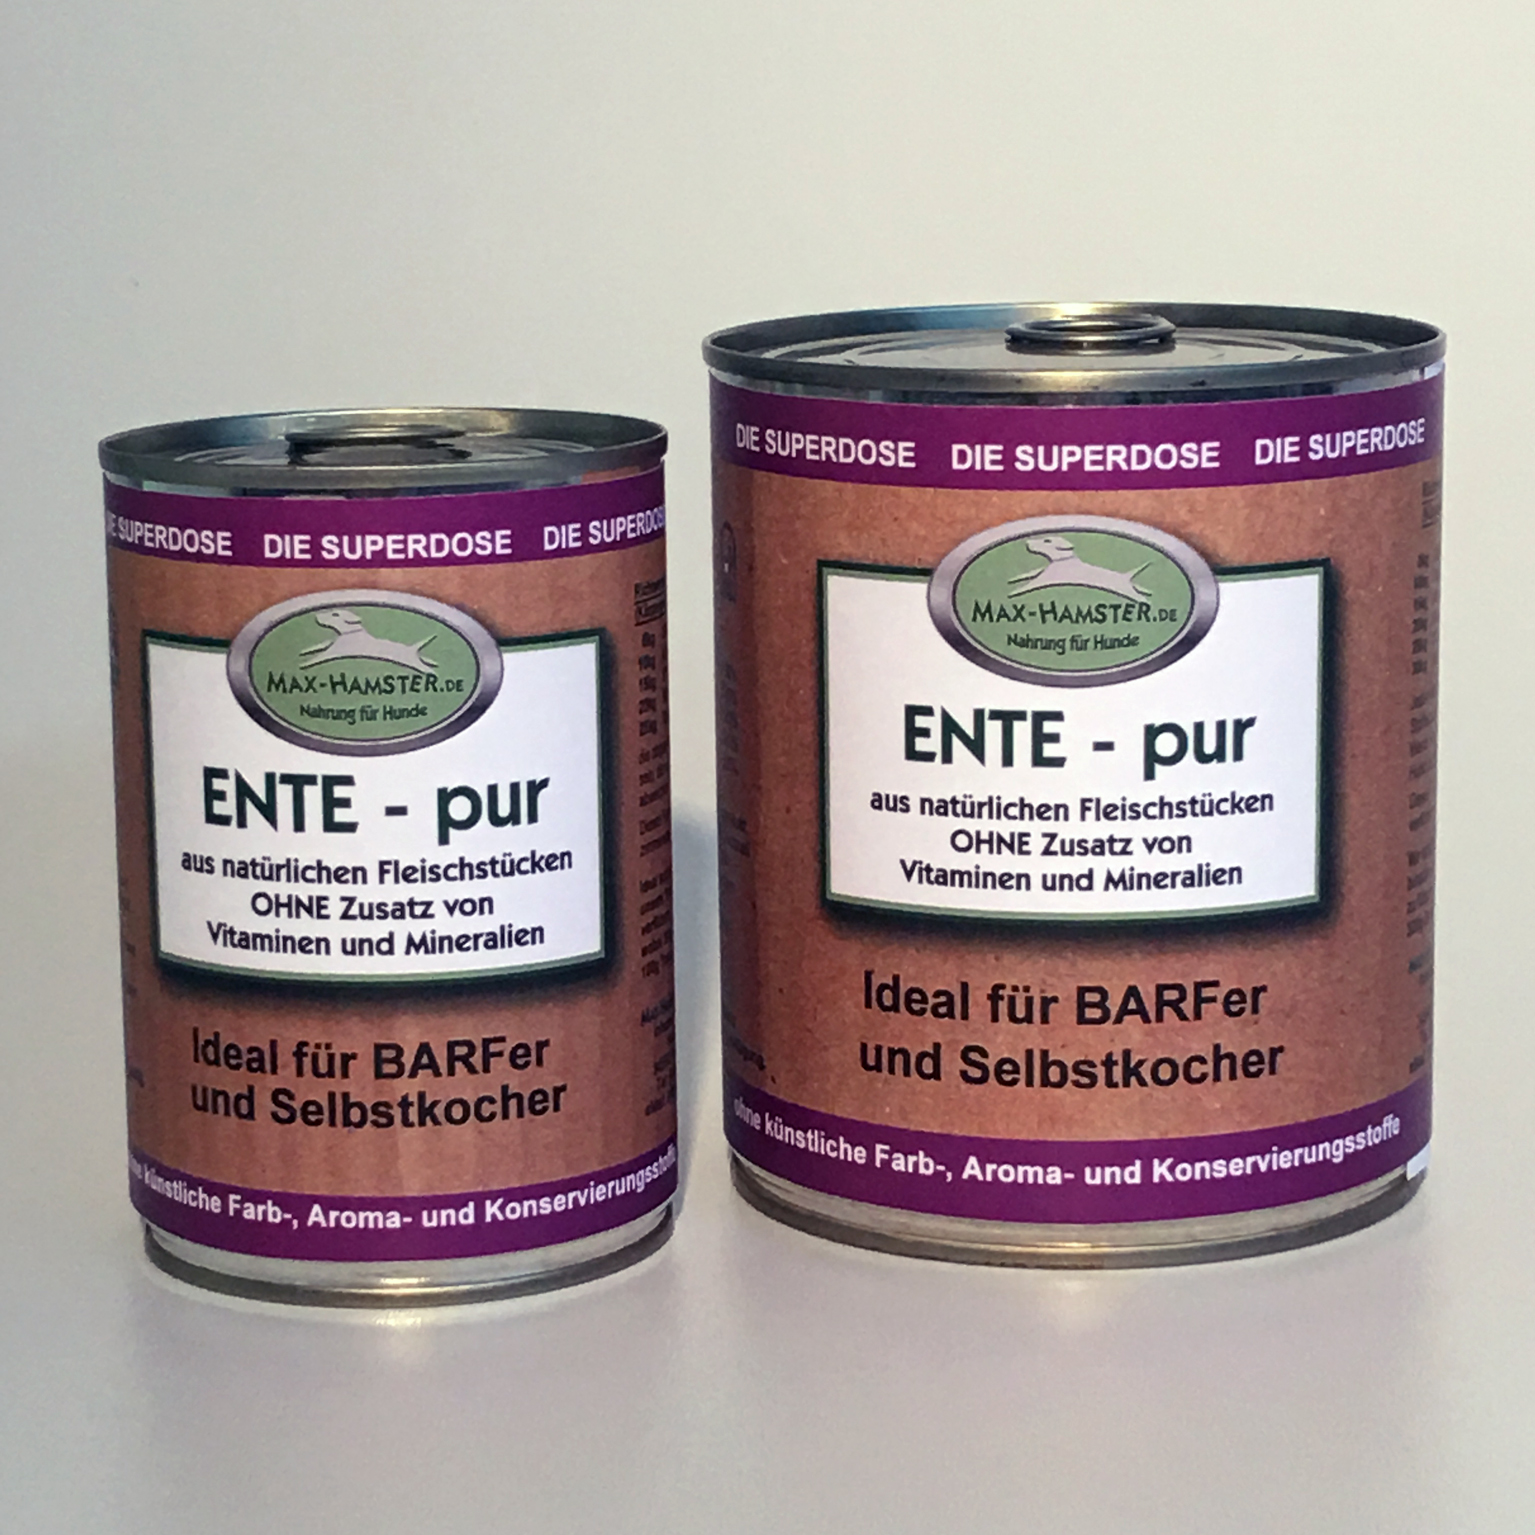 Ente - pur   Premium Dosenfleisch OHNE Zusätze  1x 400g